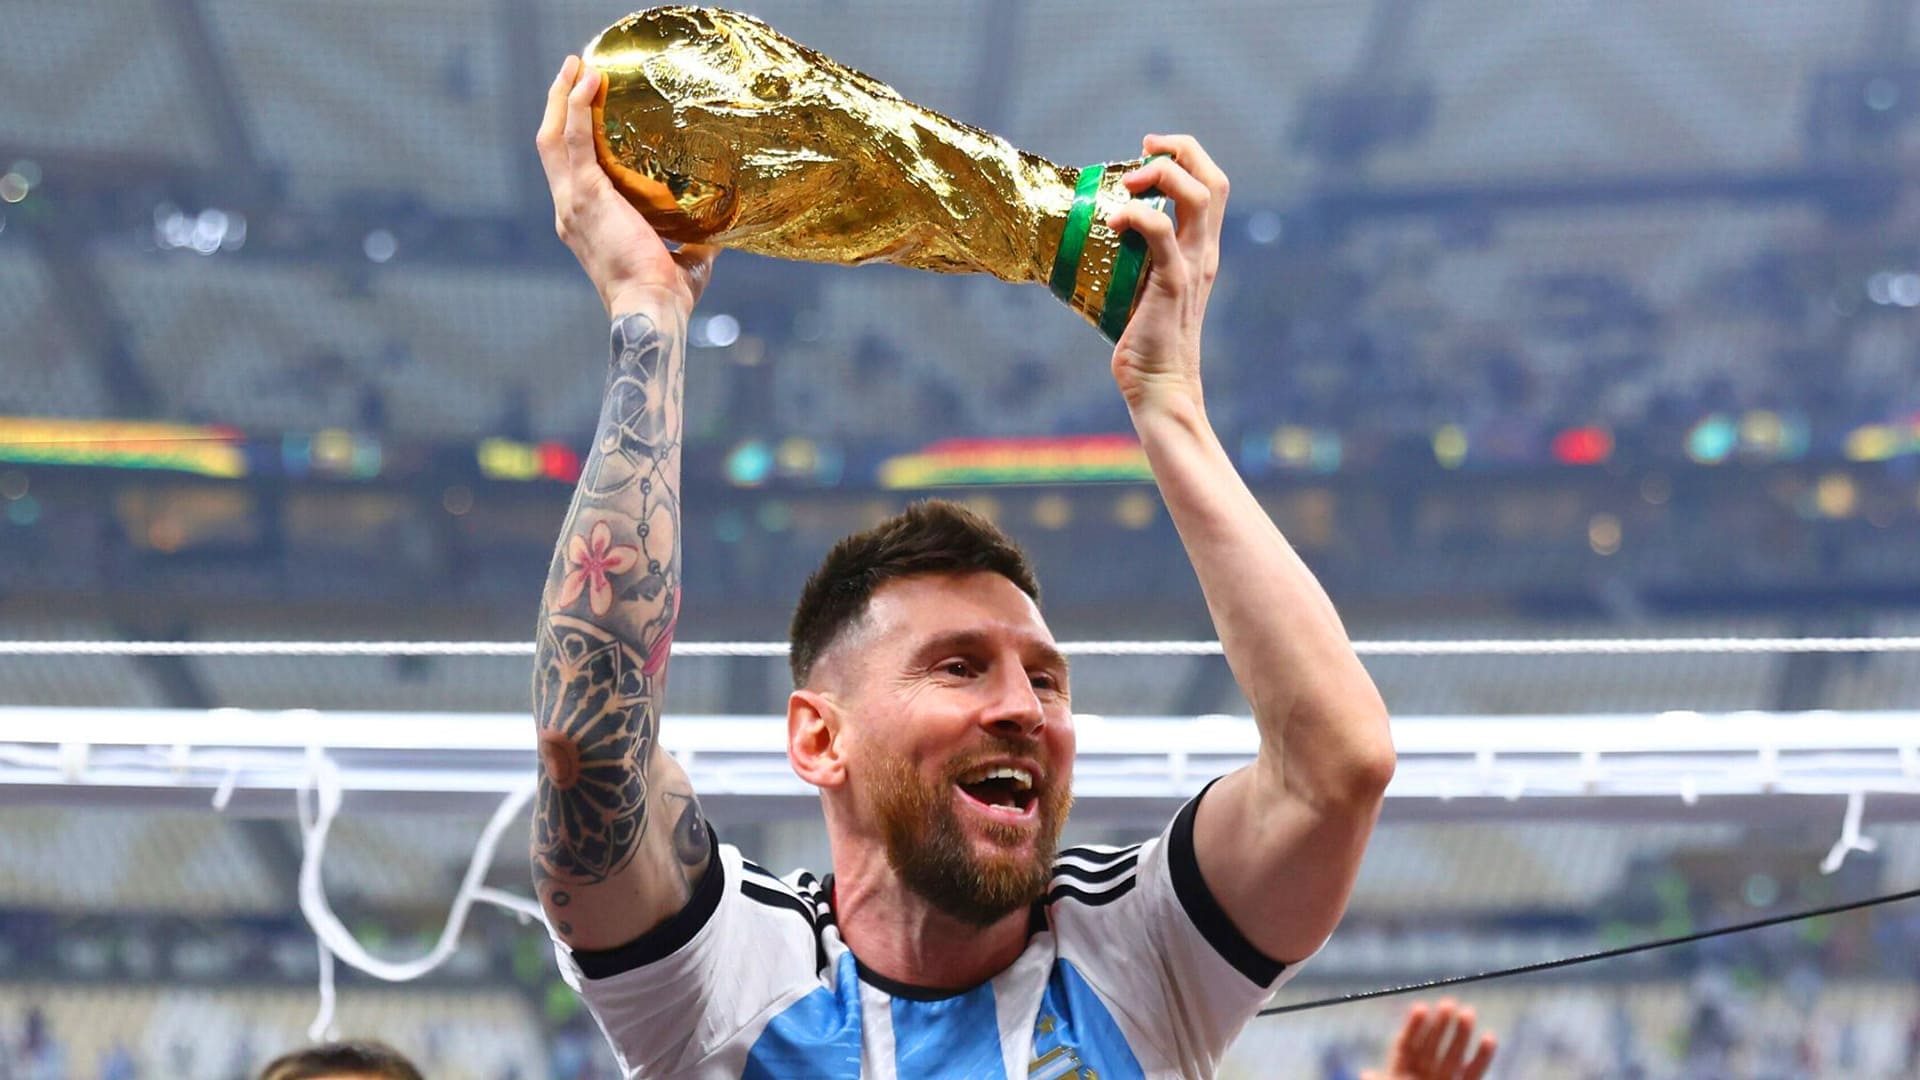 Hình nền World Cup của Messi đẹp lung linh và mang đậm chất lịch sử, chắc chắn sẽ làm các fan bóng đá không thể rời mắt được! Hãy xem ngay và cảm nhận!